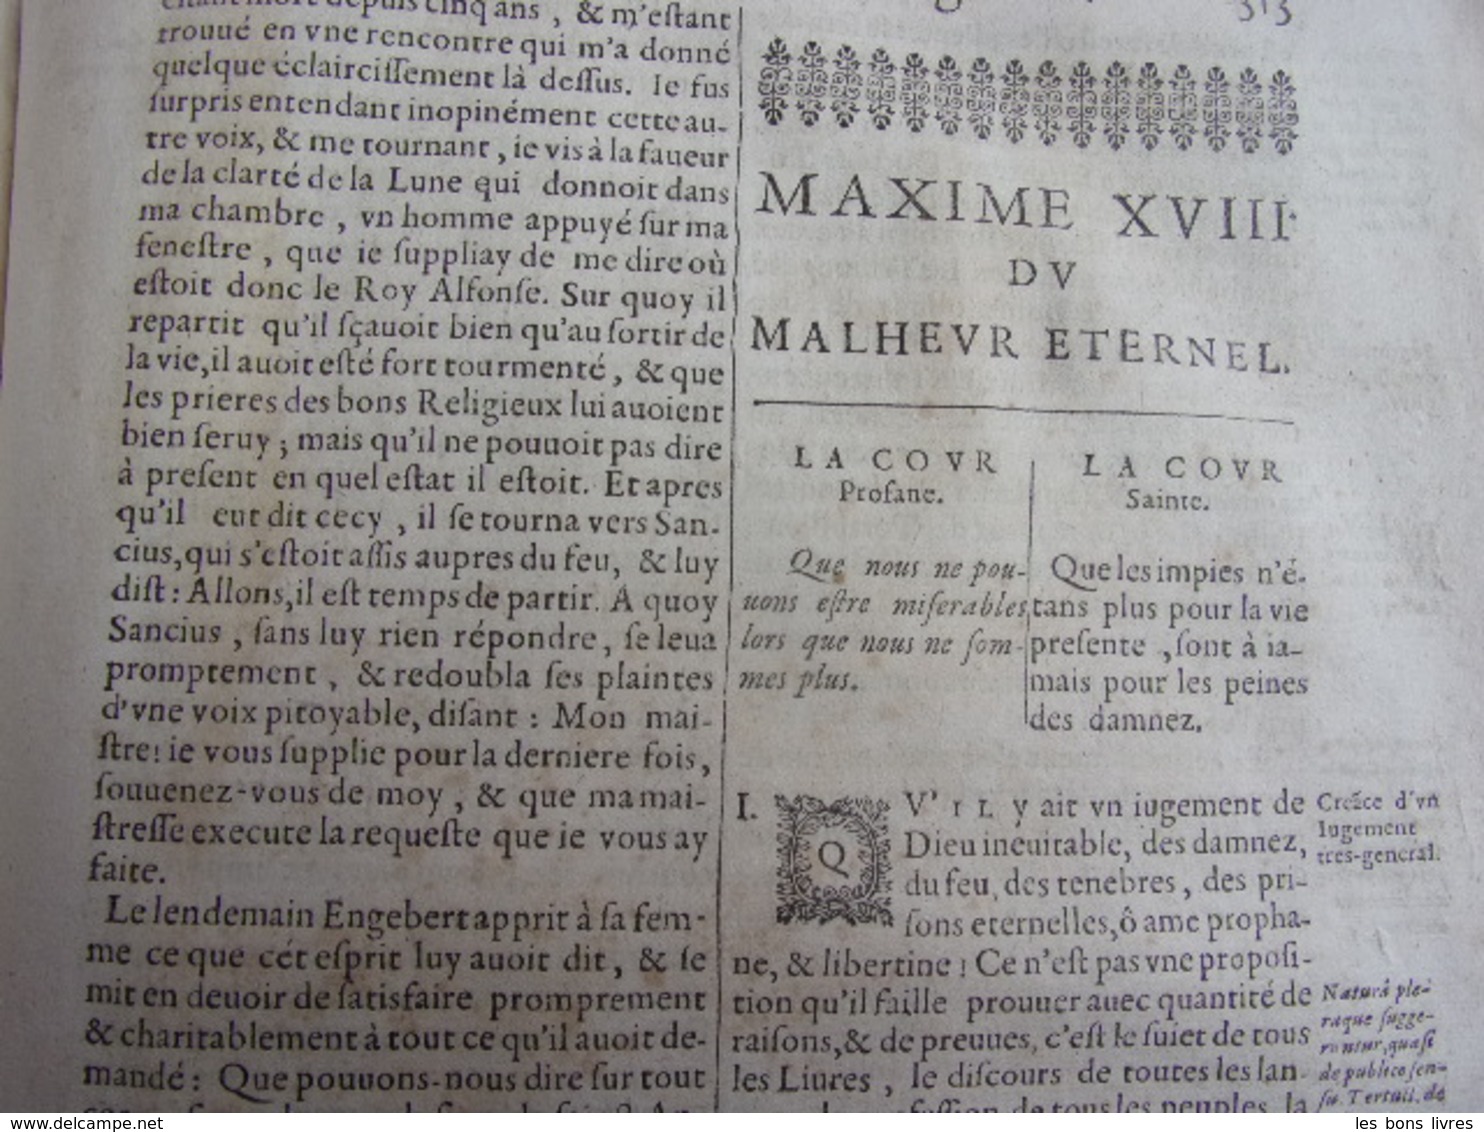 Nicolas Caussin - La cour Sainte & Traité des passions. - 1664